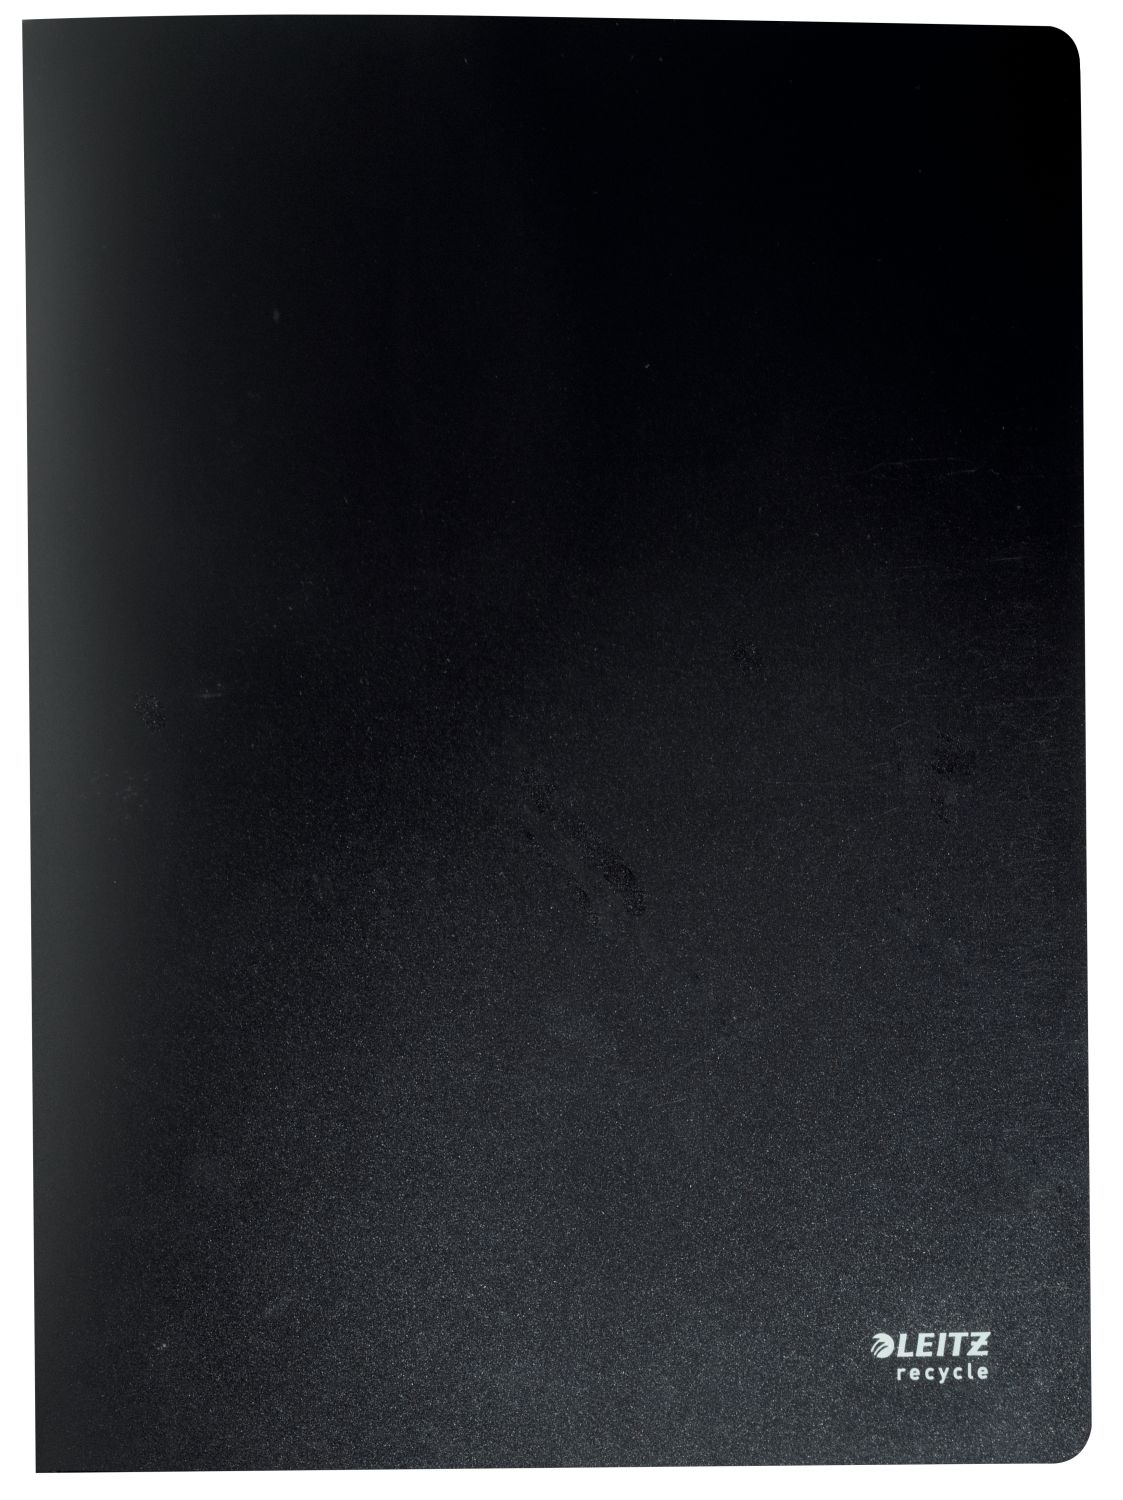 Sichtbuch Leitz Recycle 4676-00-95, für DIN A4, 20 Hüllen, PP 500 mym, schwarz